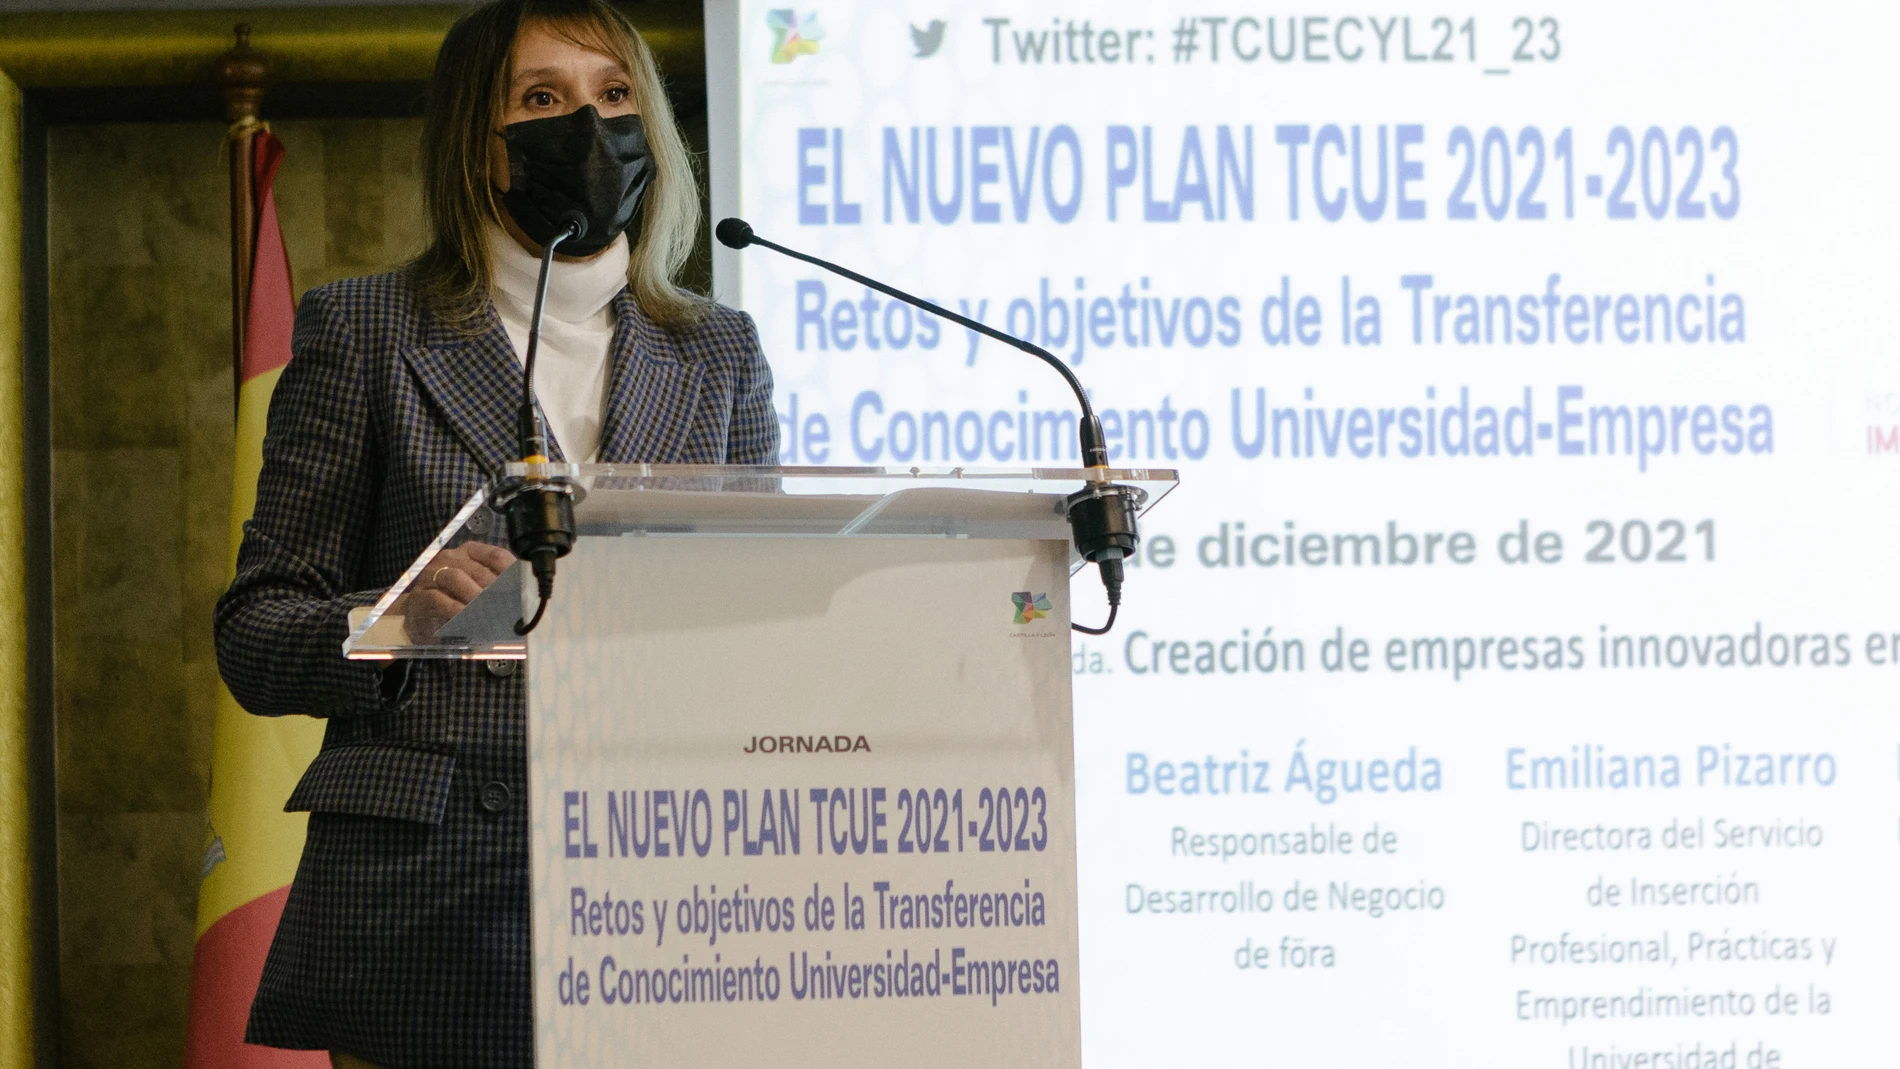 La consejera de Educación, Rocío Lucas, participa en la clausura de la jornada "El nuevo Plan TCUE. Retos y objetivos de la Transferencia del Con"